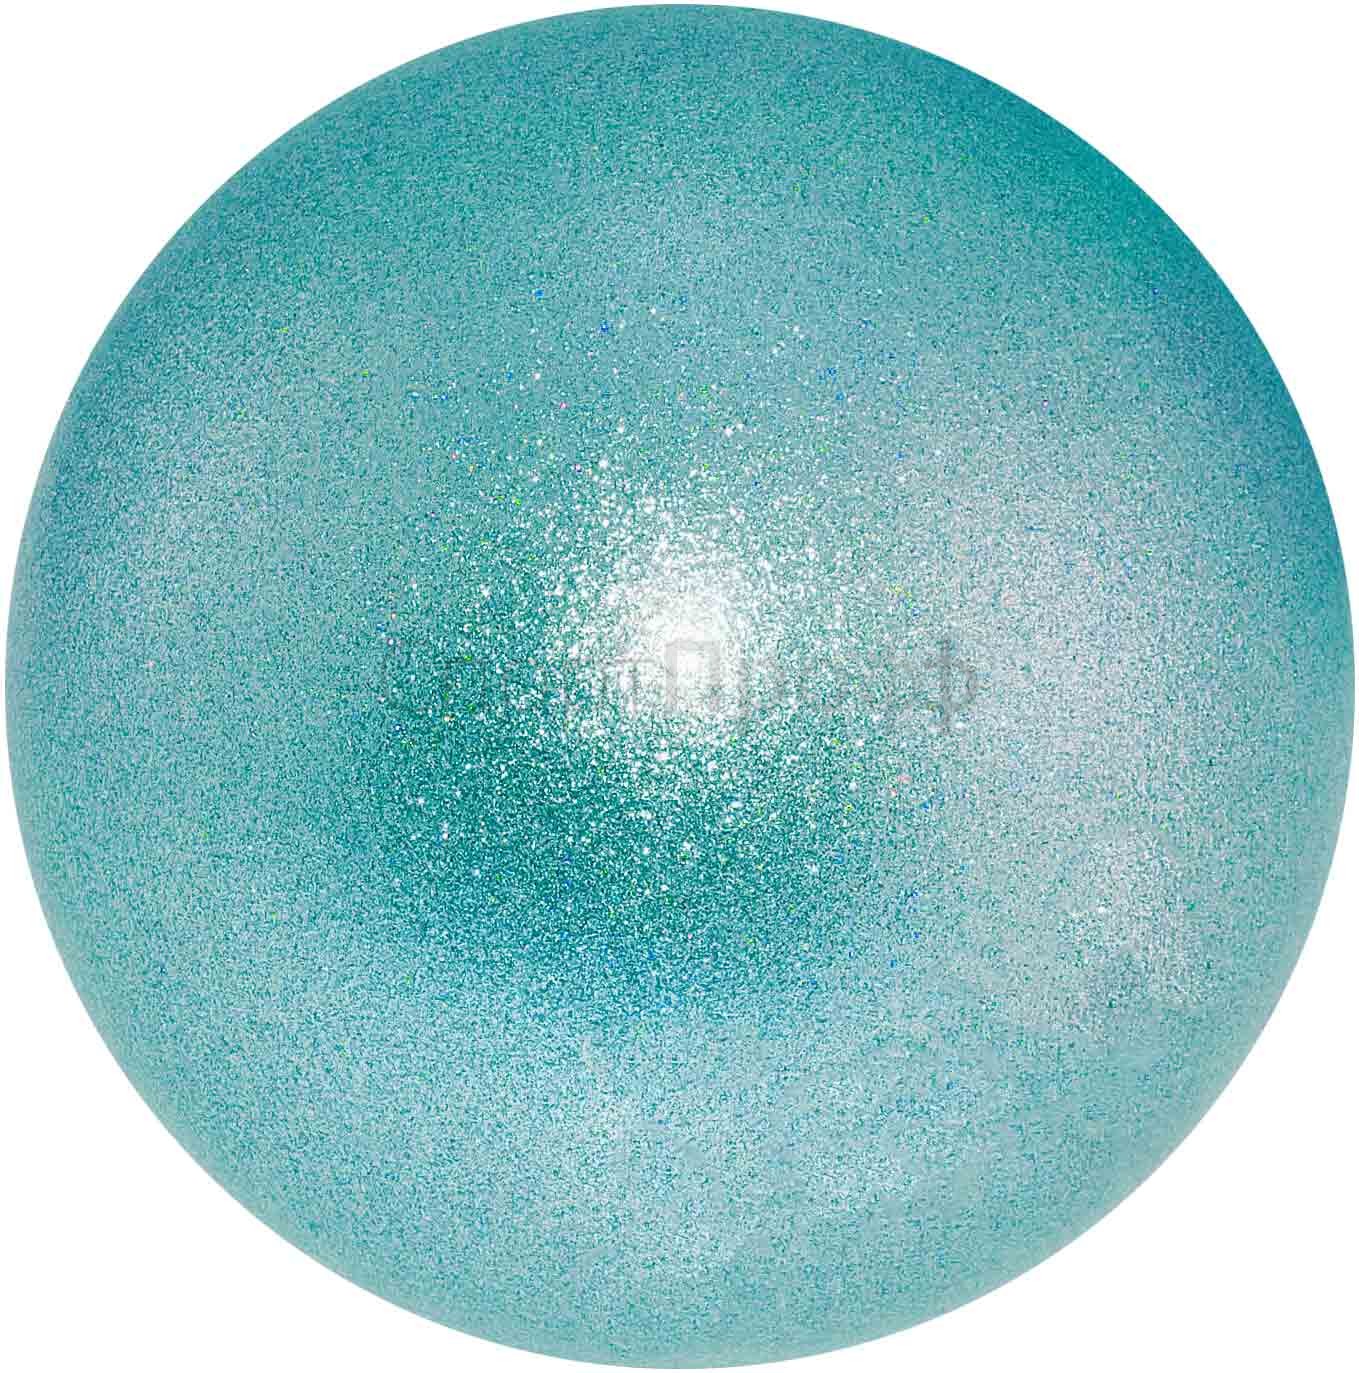 Мяч CHACOTT Prism 18.5 см. 620 (сода) для художественной гимнастики